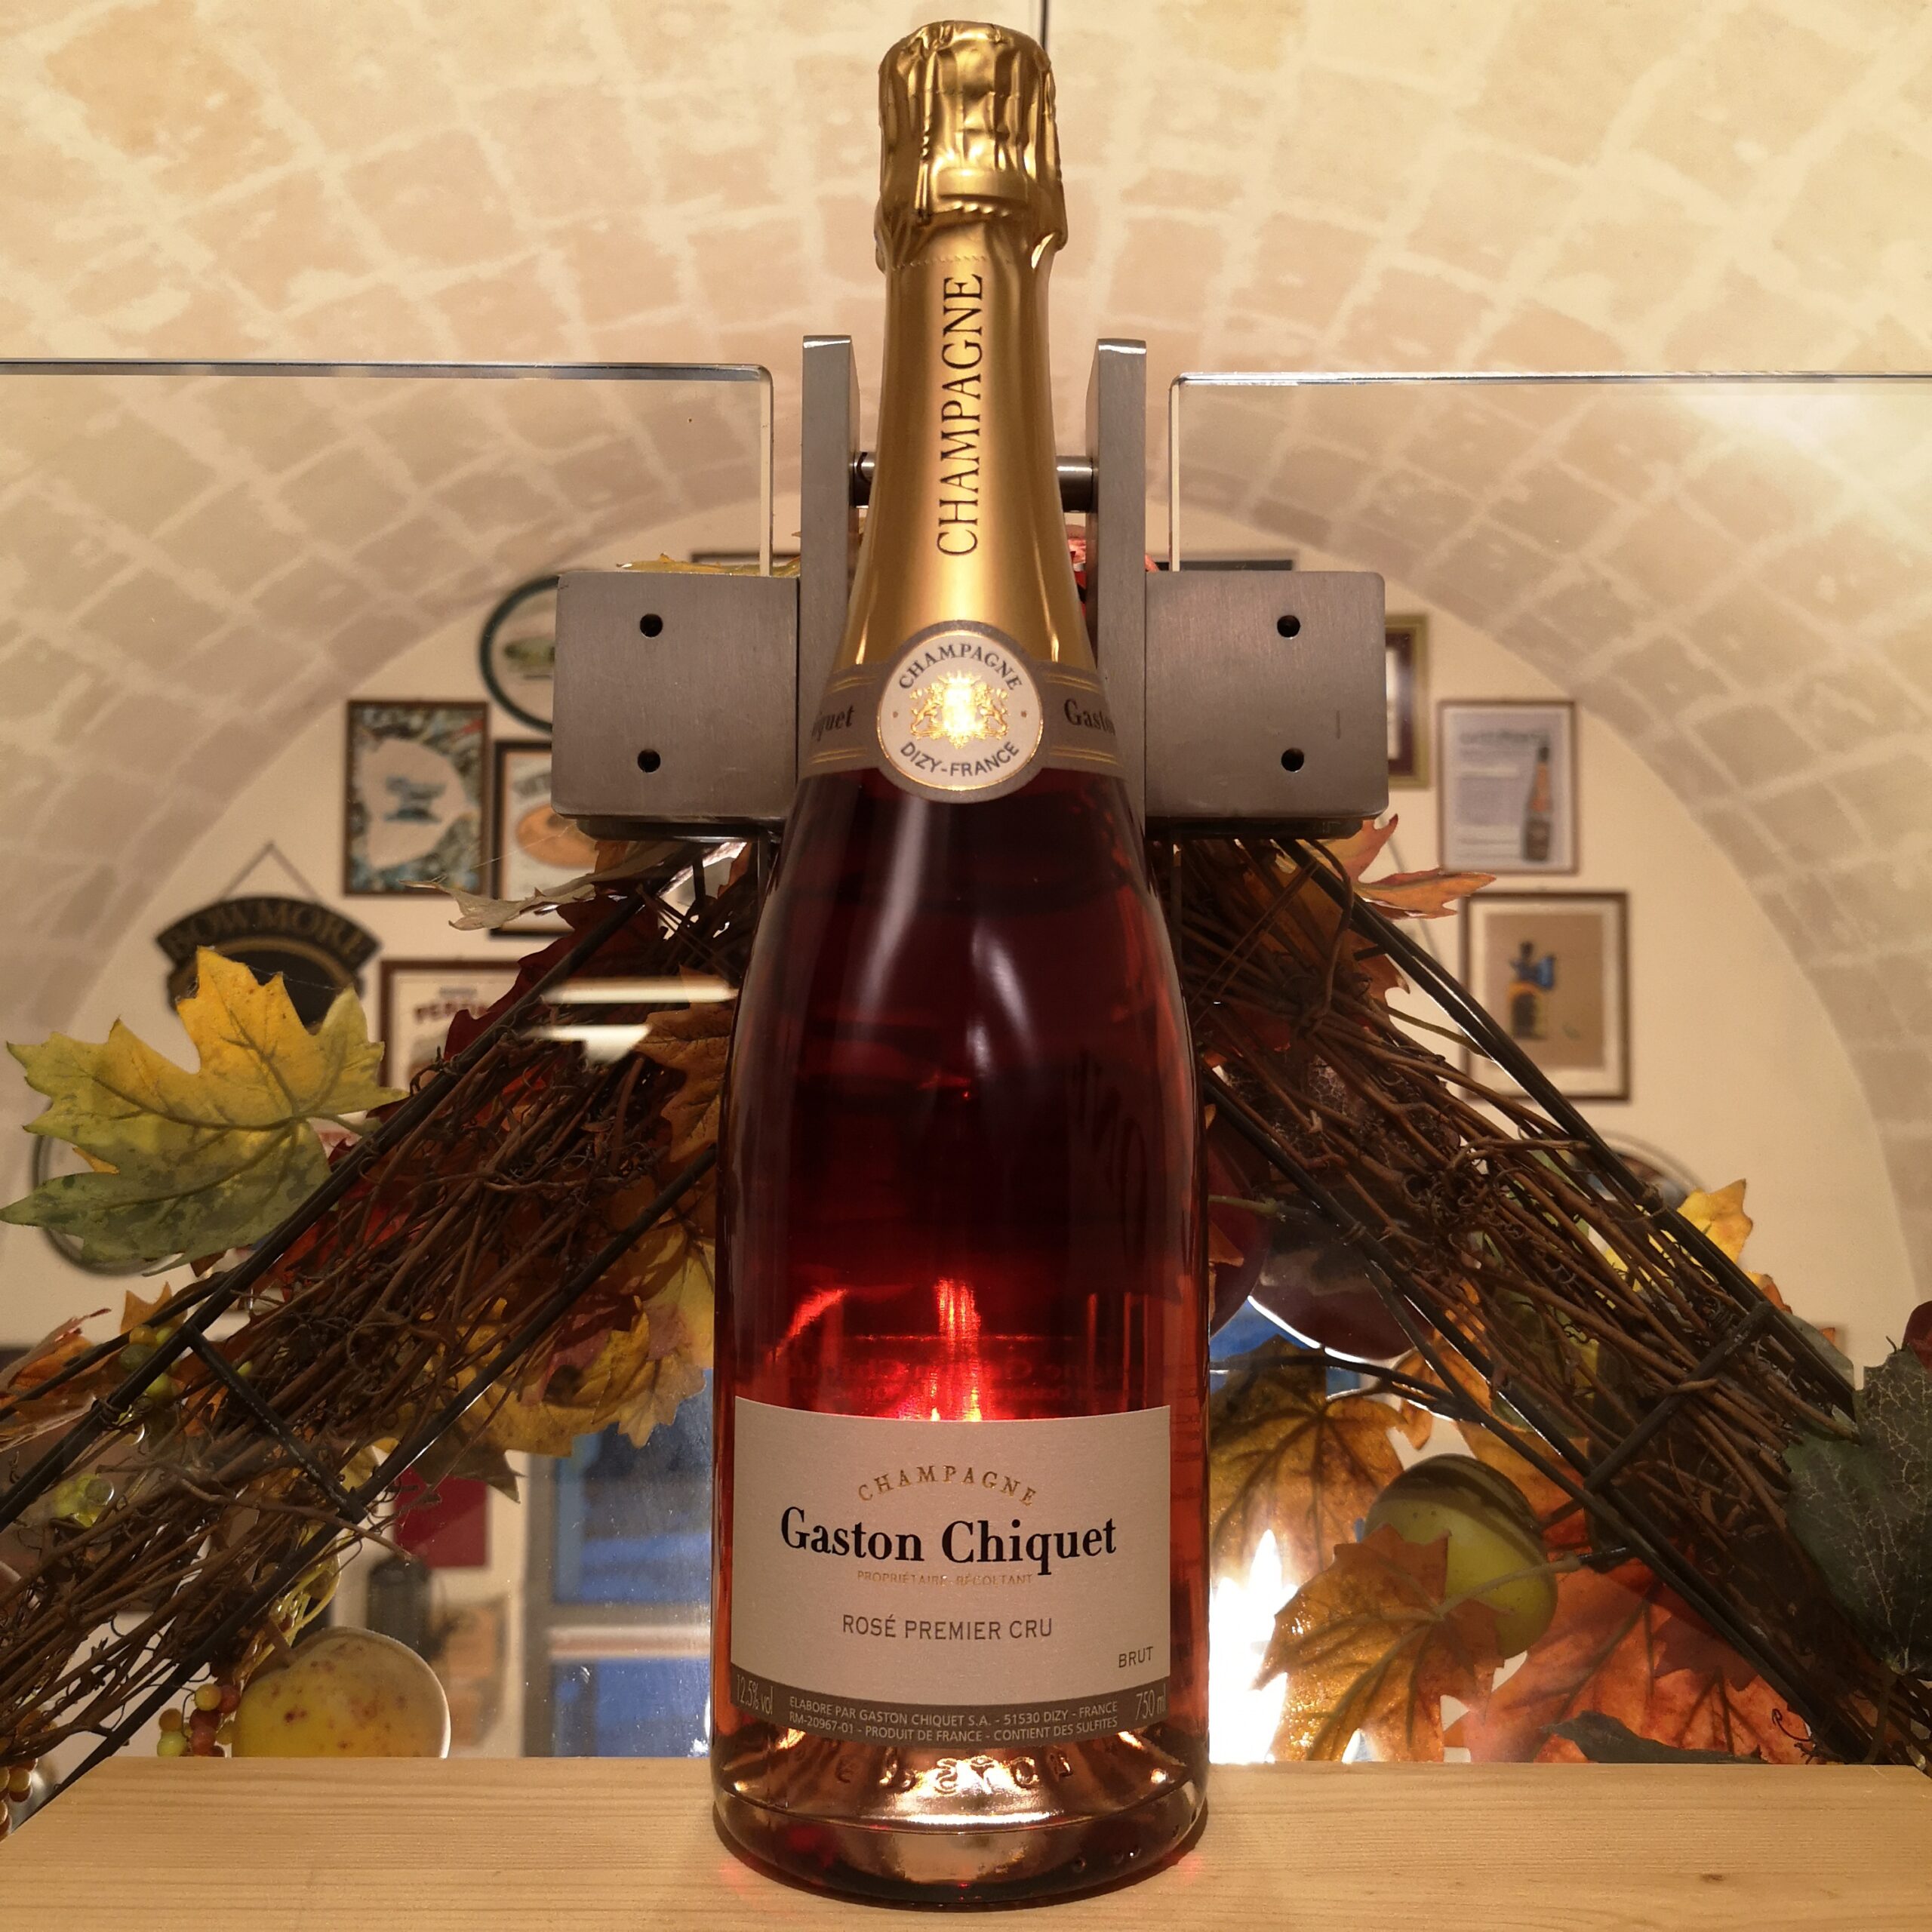 Rosé Premier Cru Gaston Chiquet Champagne Brut